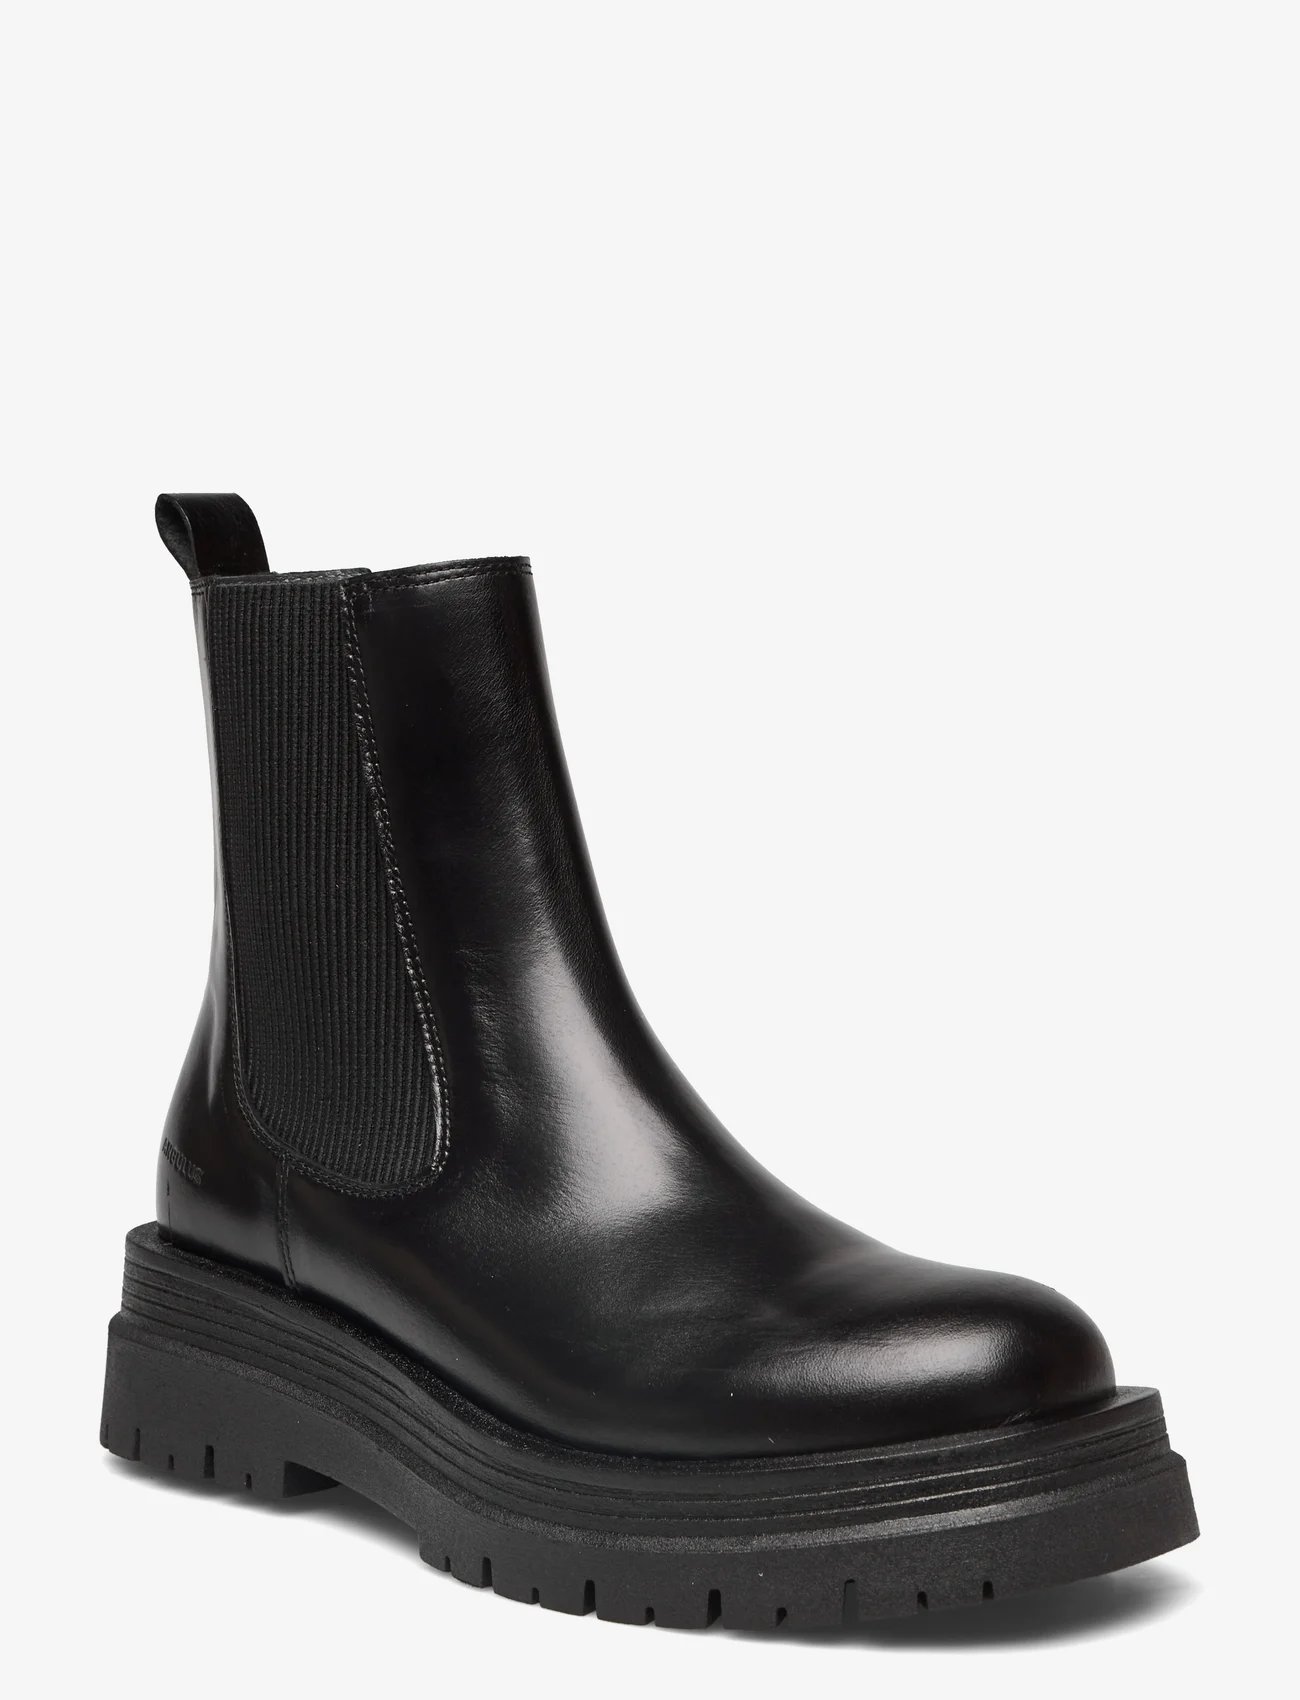 ANGULUS - Boots - flat - nordischer stil - 1835/019 black /black - 1